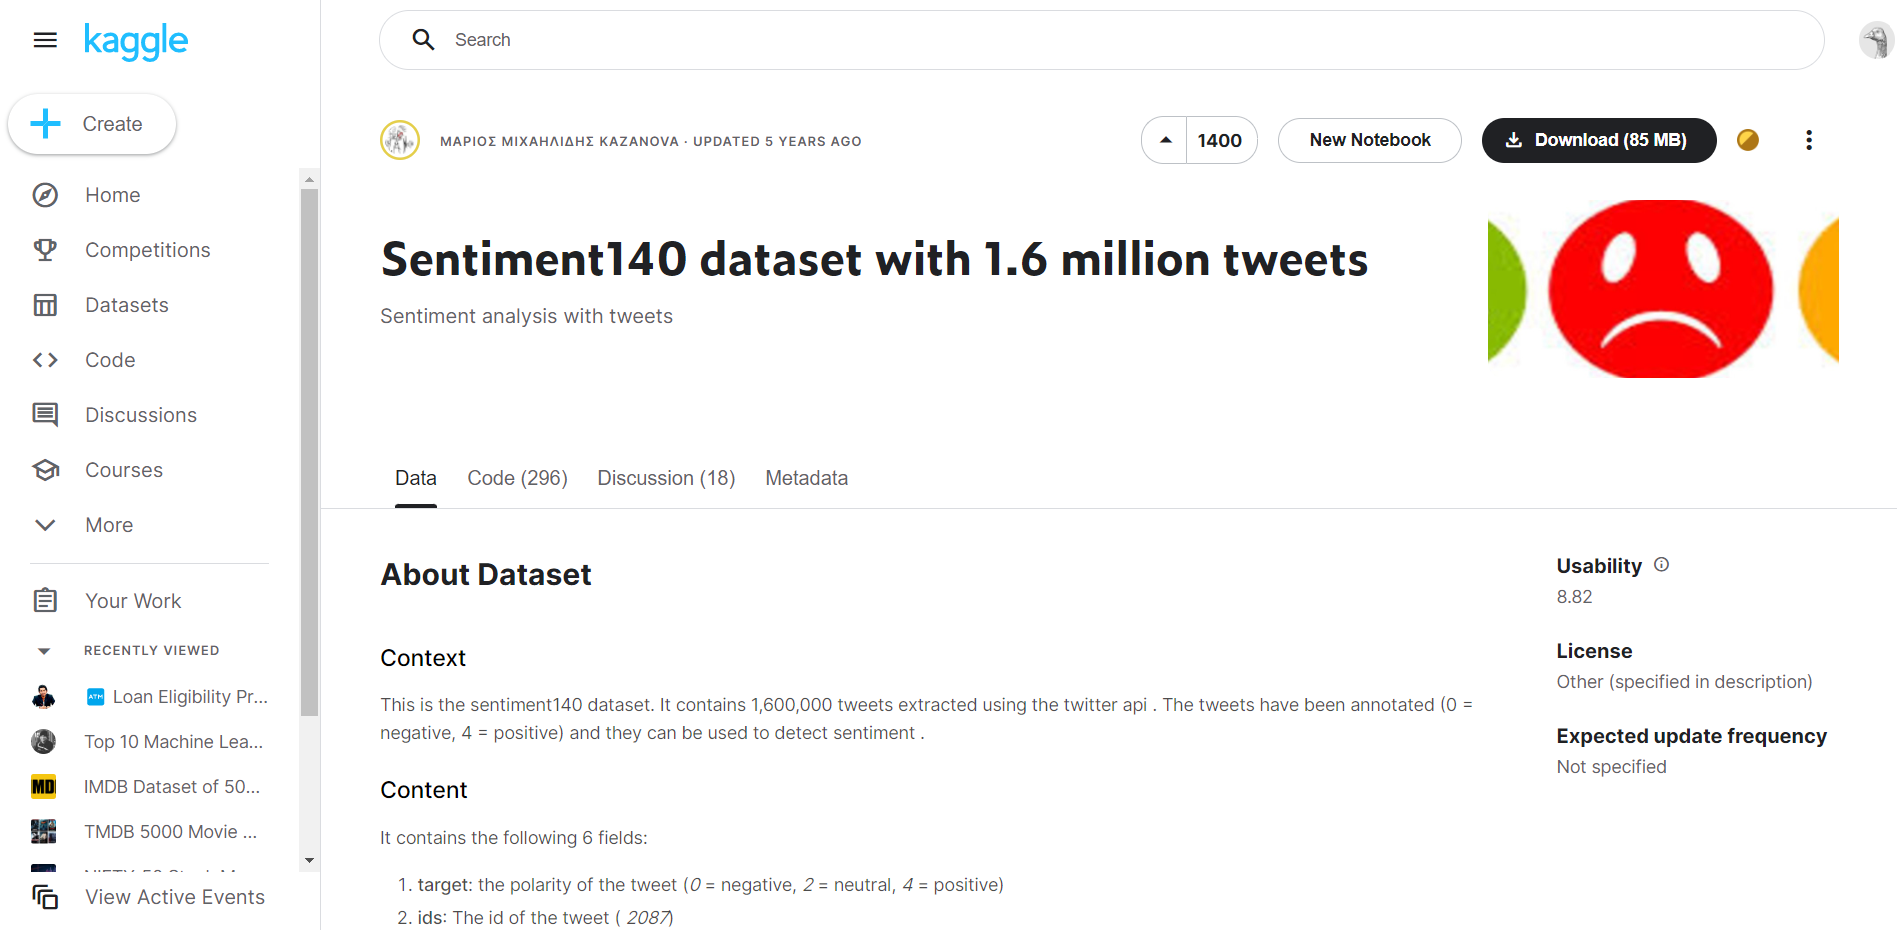 Sentiment Analysis Using Twitter Data